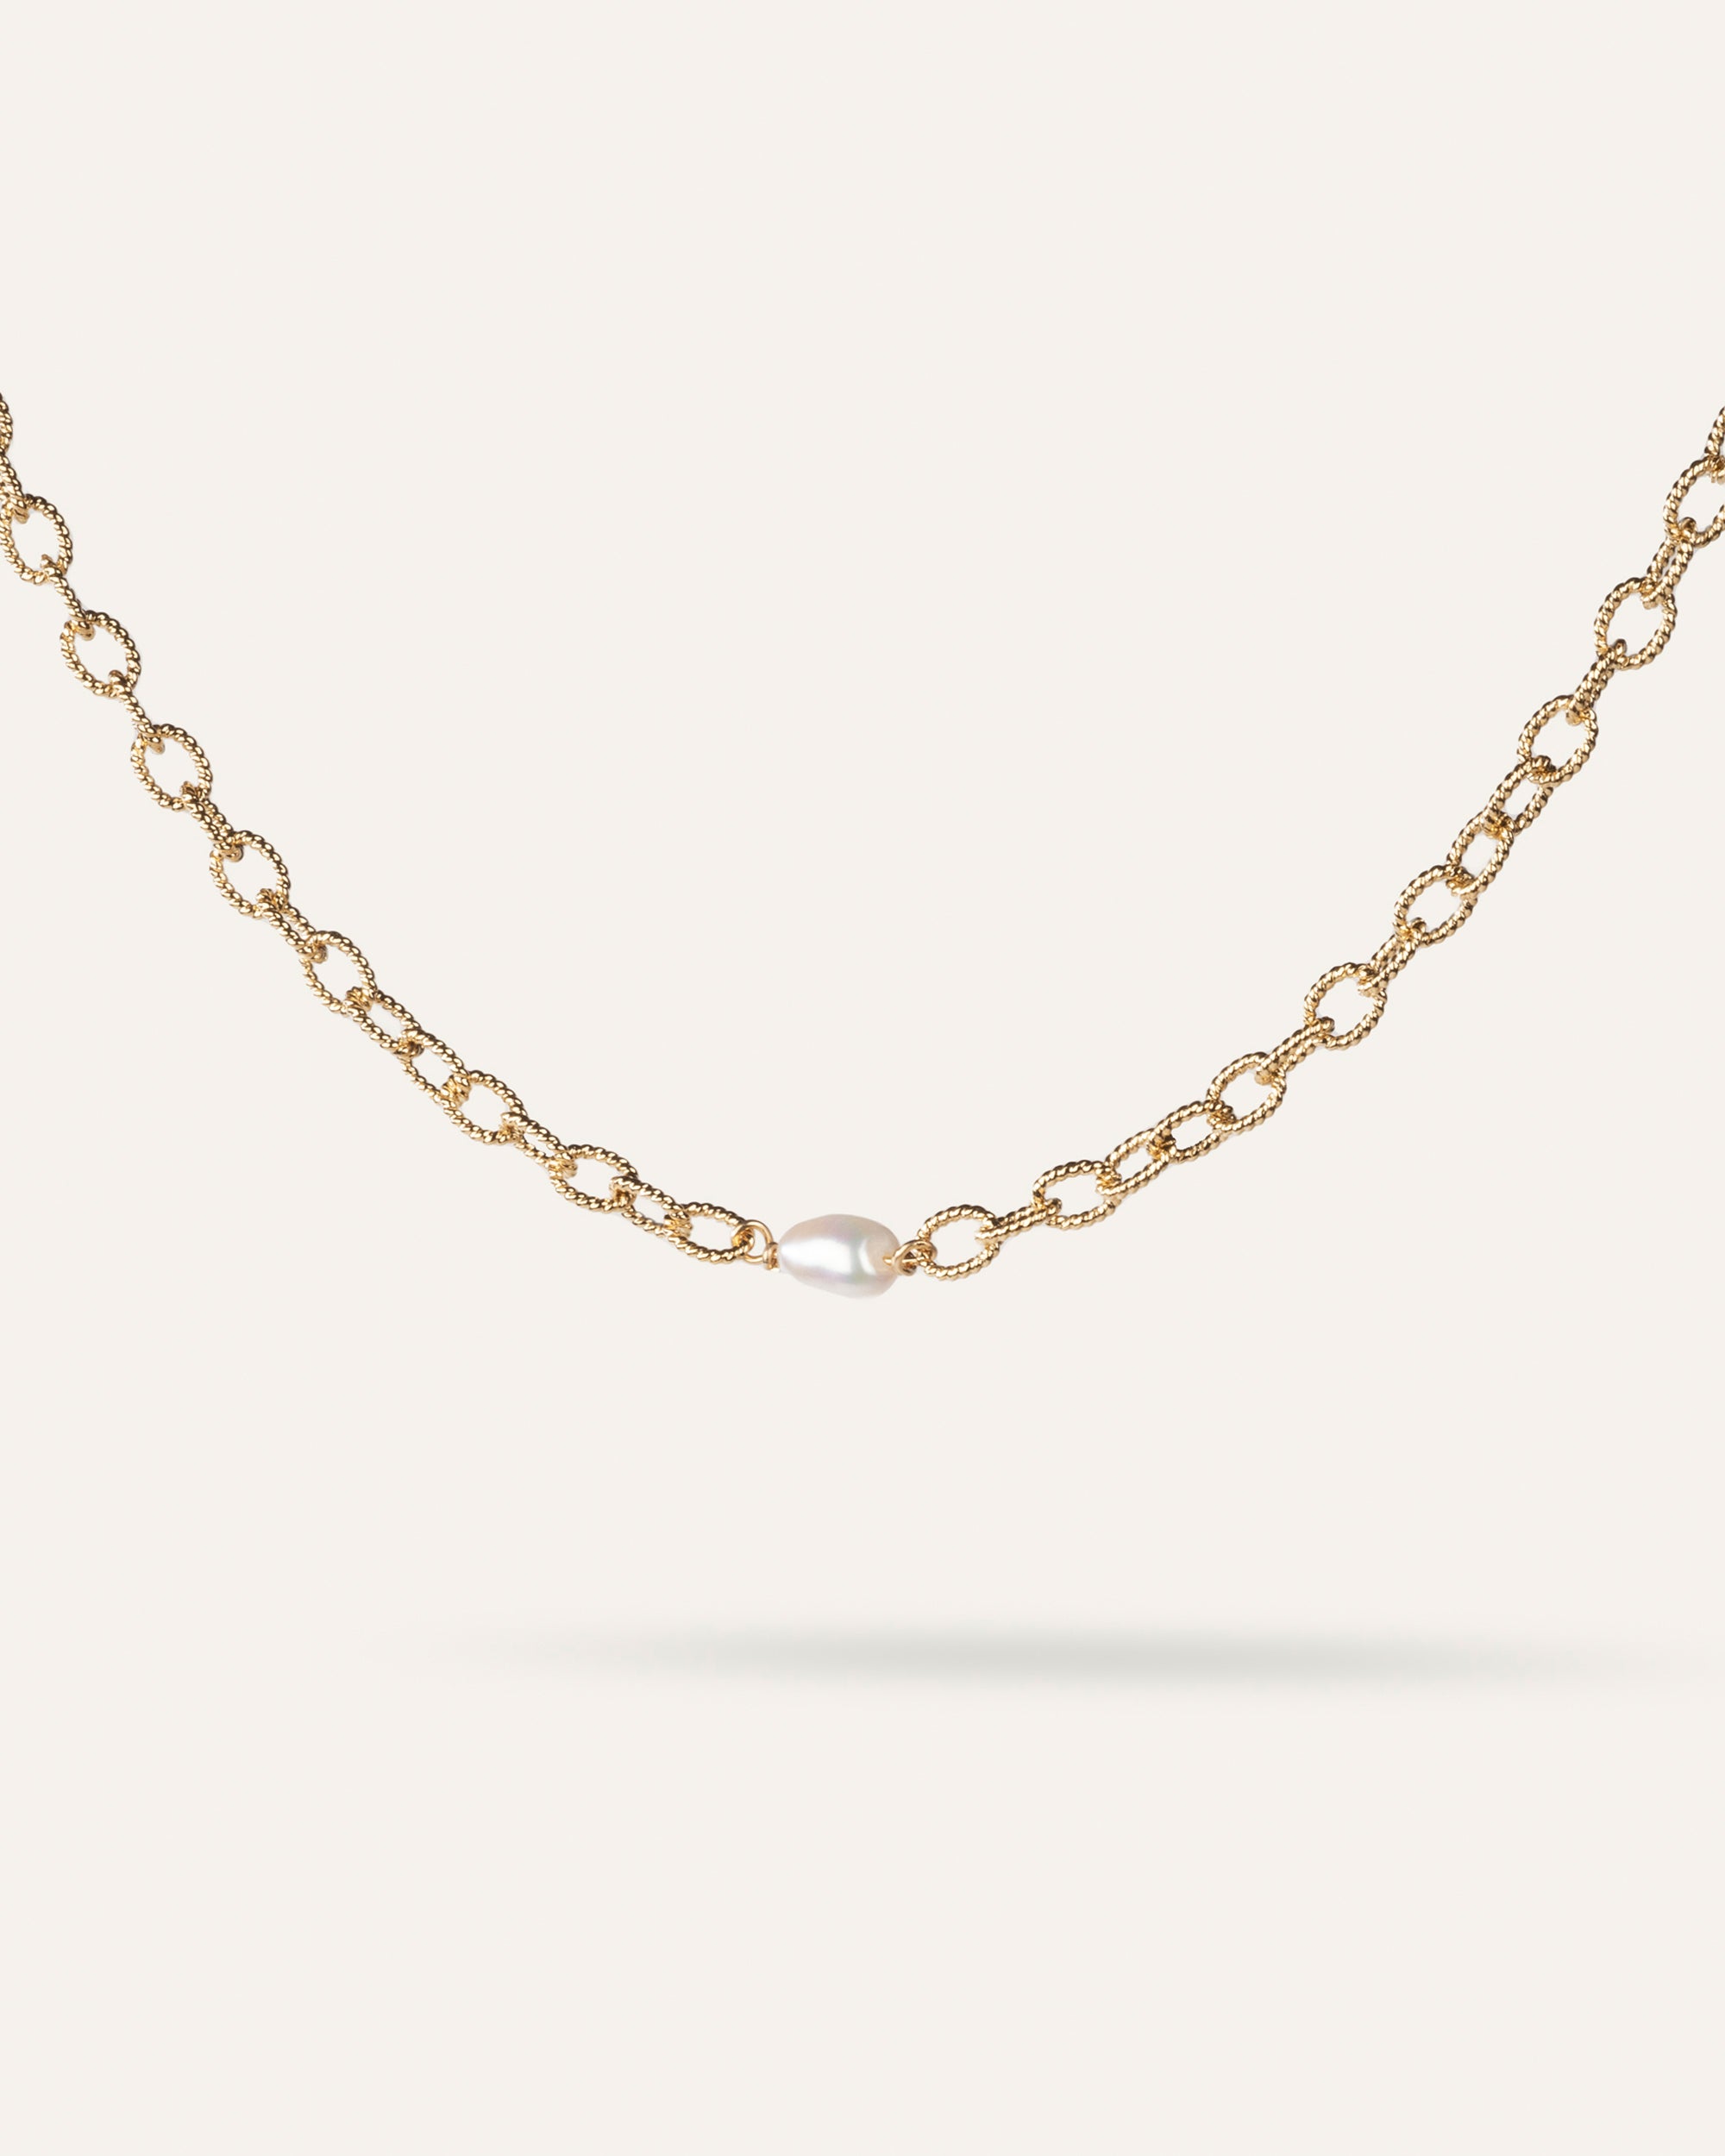 Collier en chaîne ovale facetté associé d'une perle de culture ovale en plaqué or 3 microns et made in France.